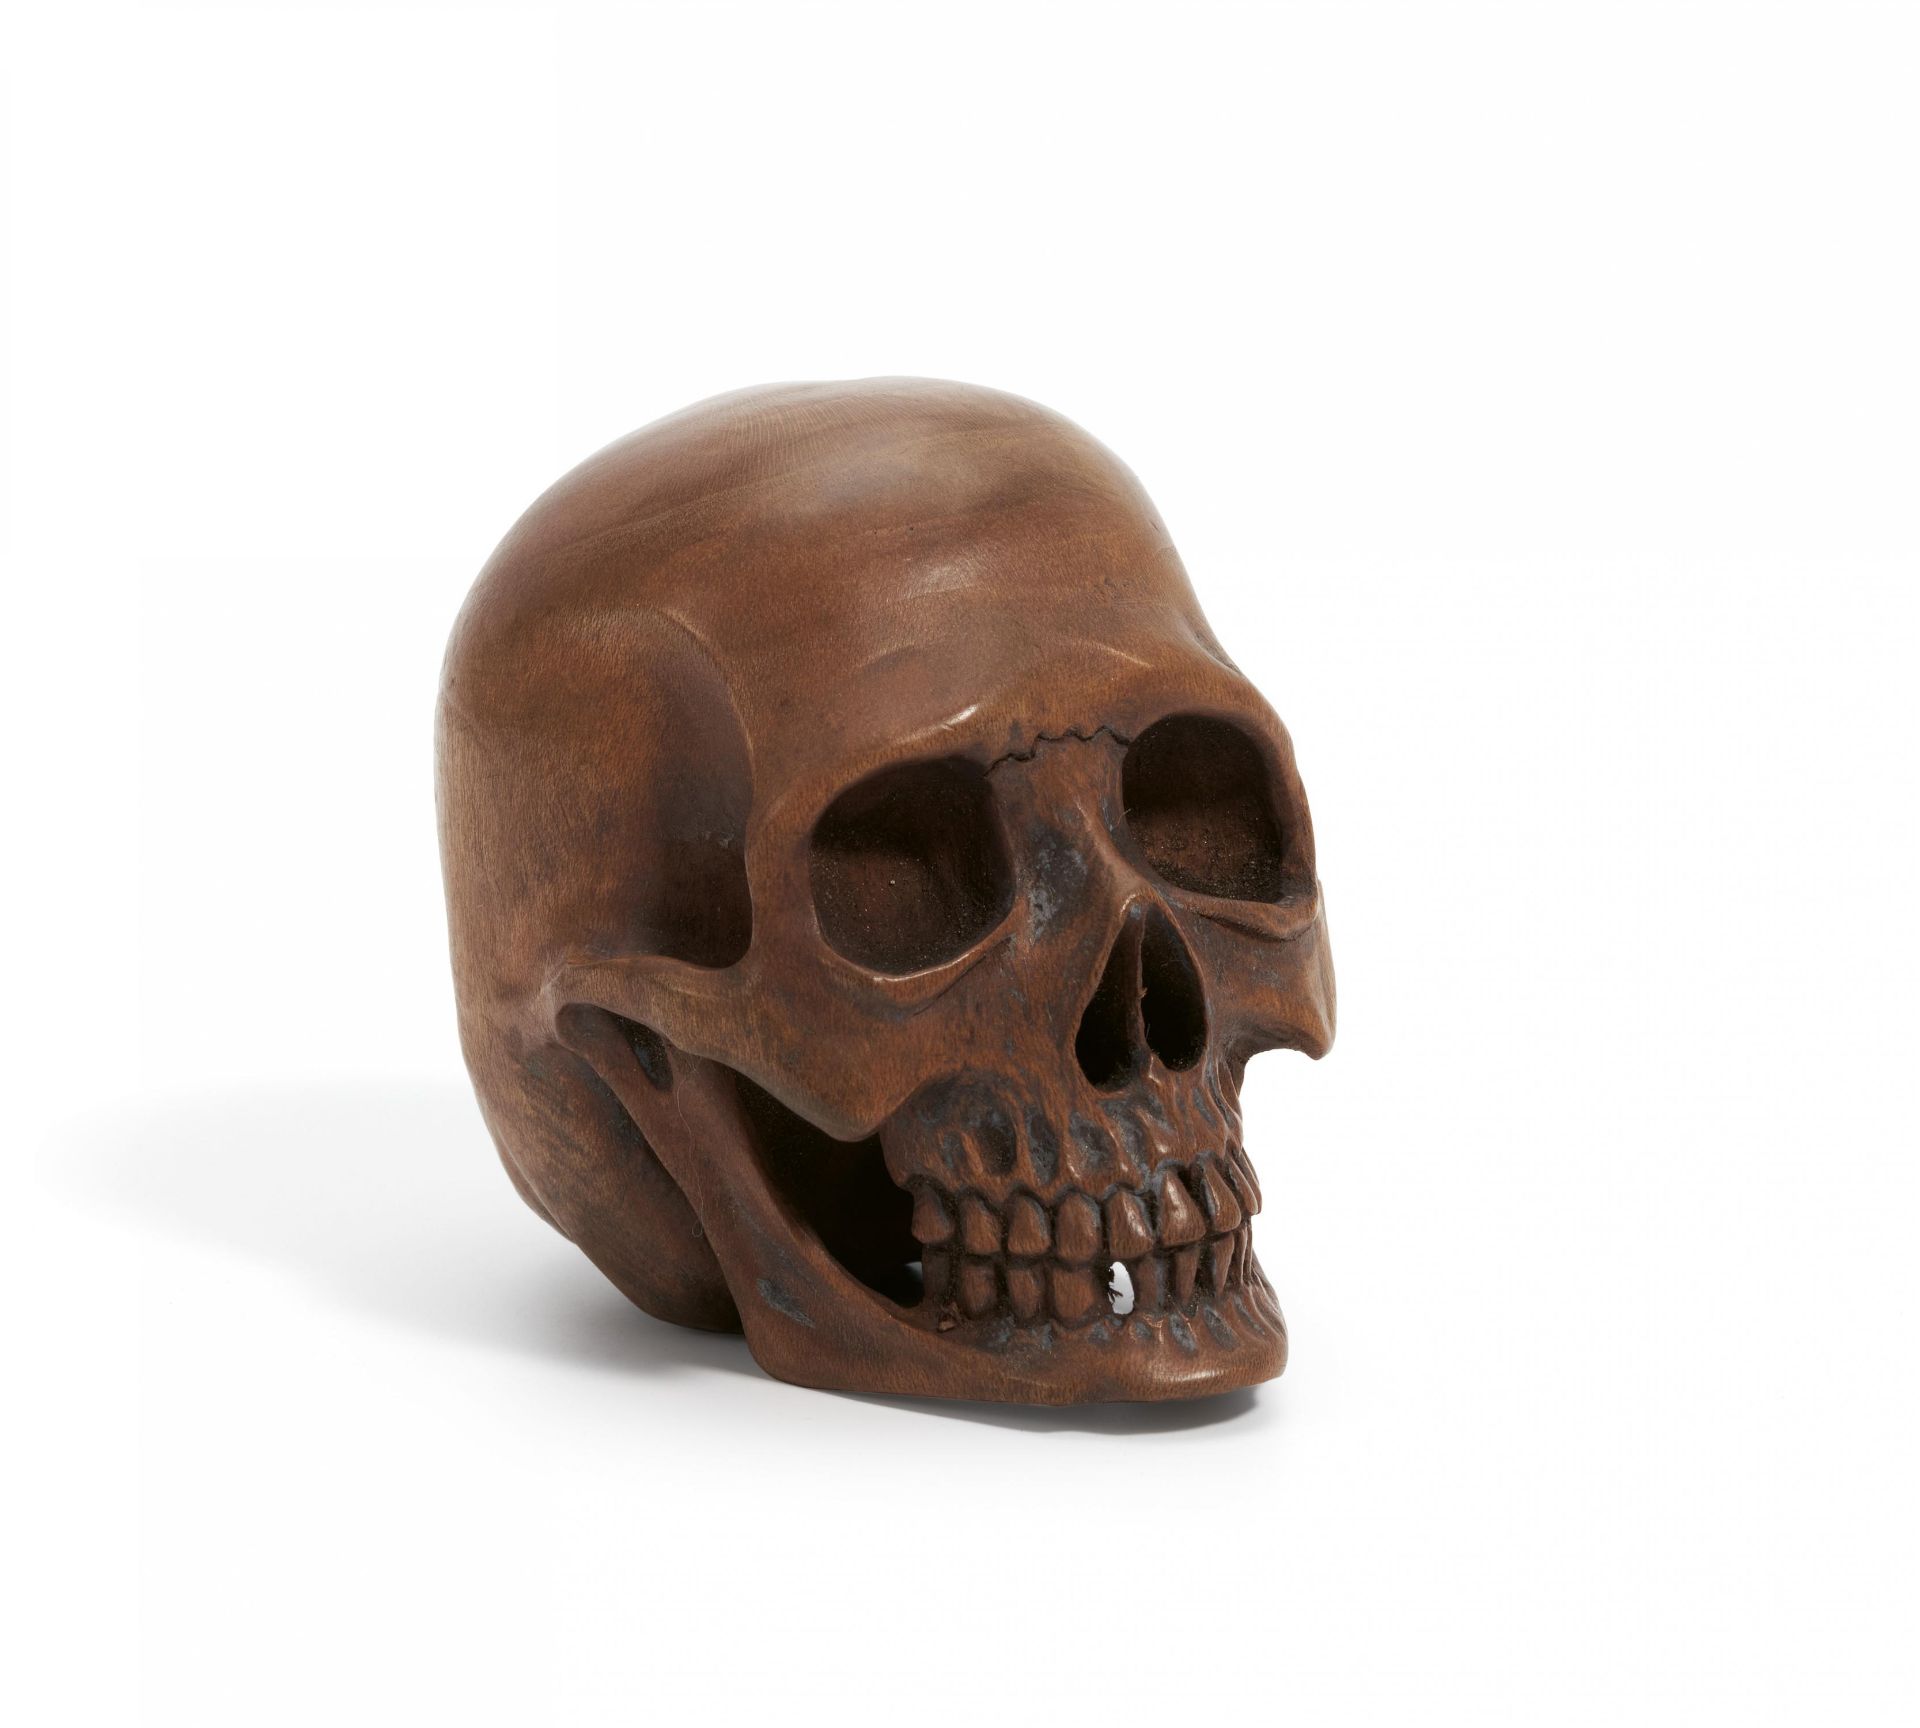 Small wooden skull